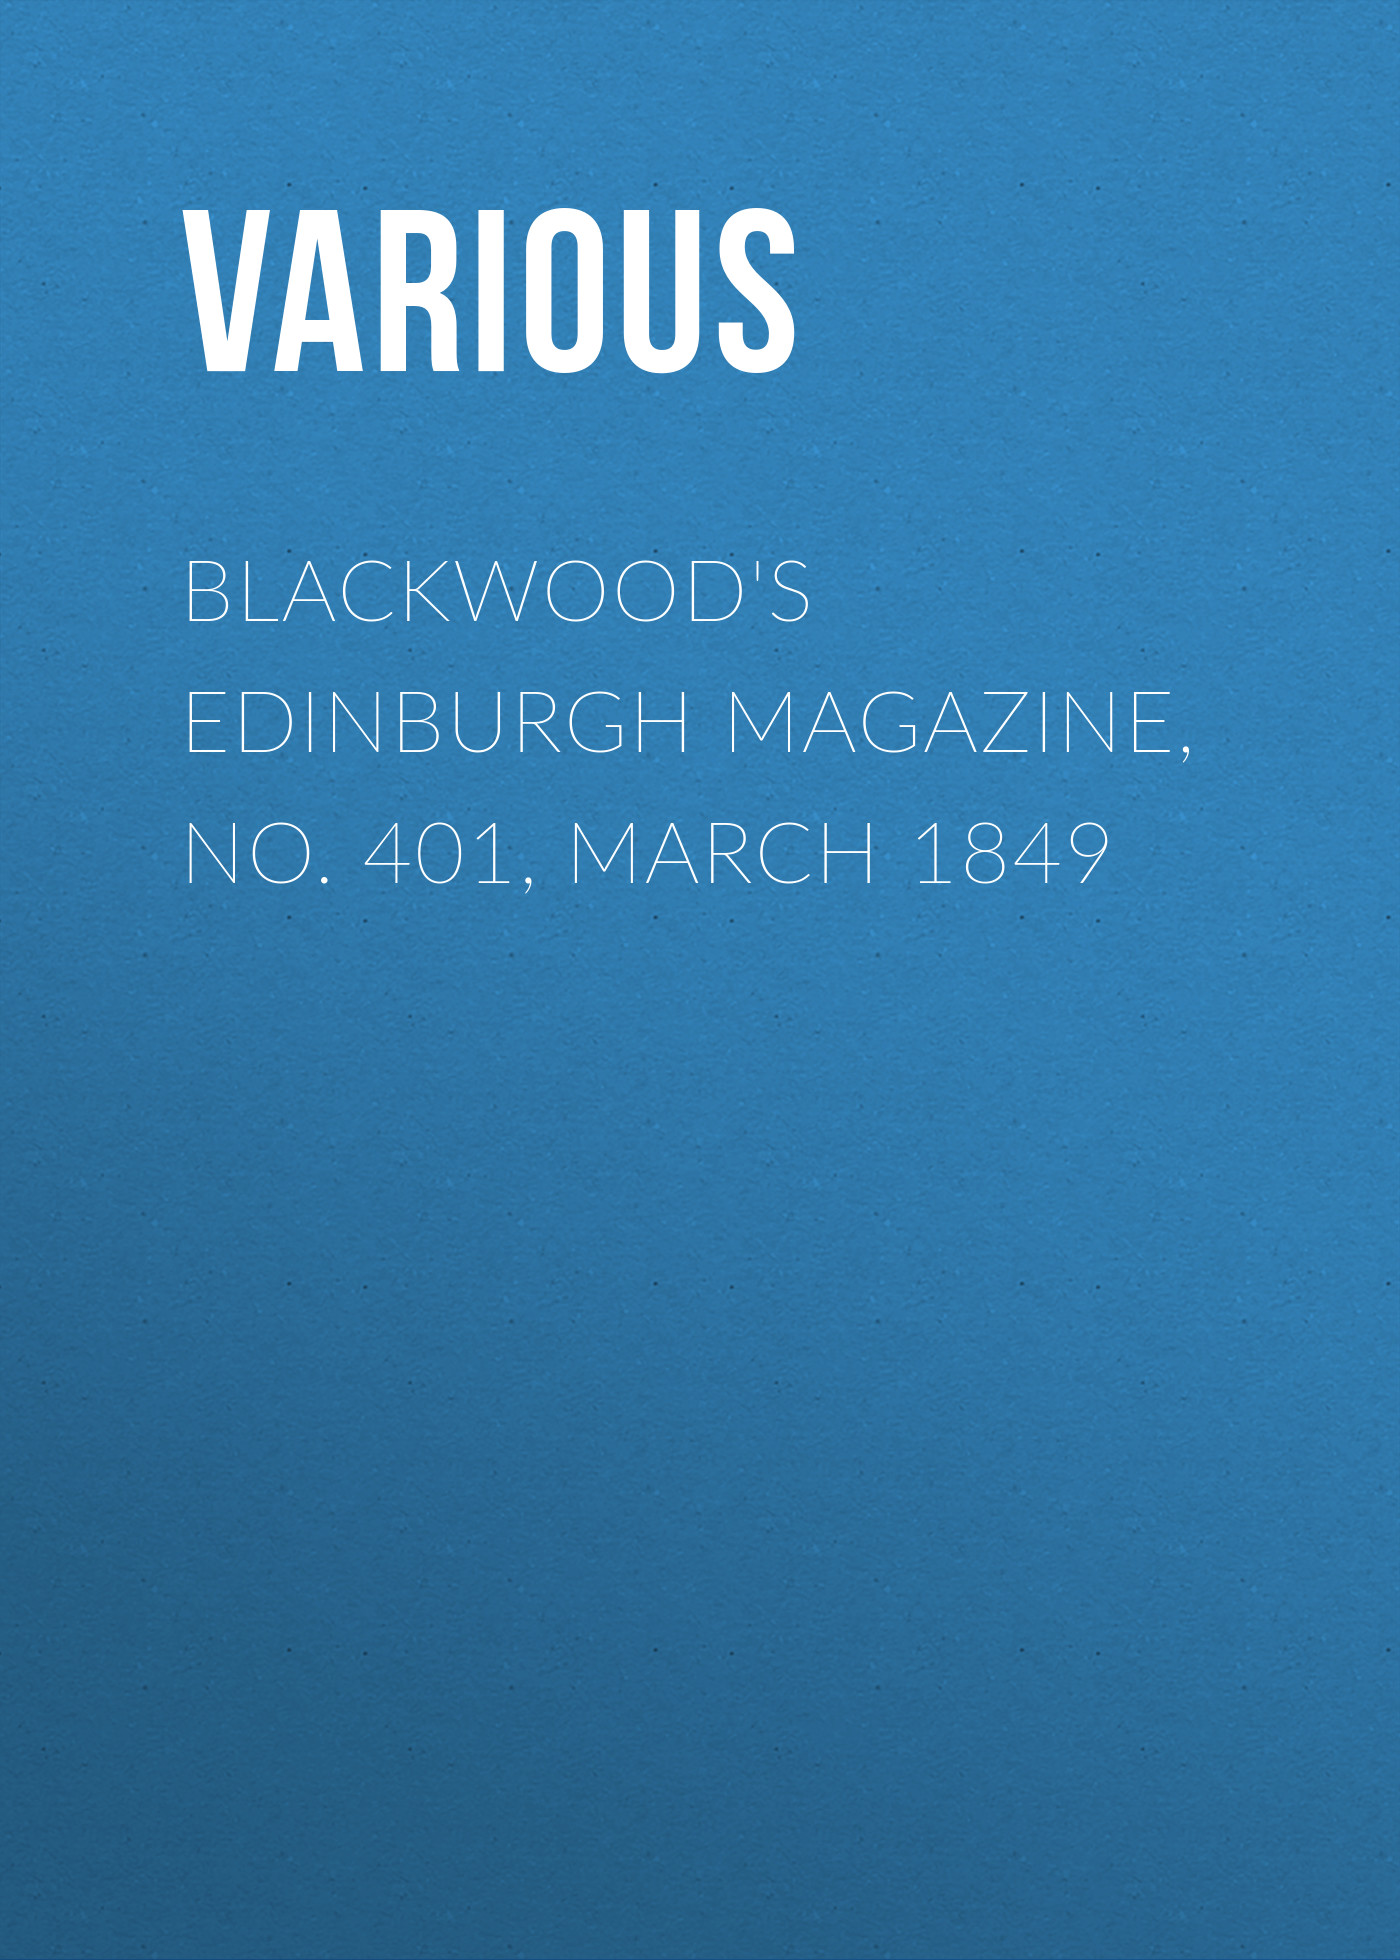 Книга Blackwood's Edinburgh Magazine, No. 401, March 1849 из серии , созданная  Various, может относится к жанру Журналы, Зарубежная образовательная литература, Книги о Путешествиях. Стоимость электронной книги Blackwood's Edinburgh Magazine, No. 401, March 1849 с идентификатором 25569335 составляет 0 руб.